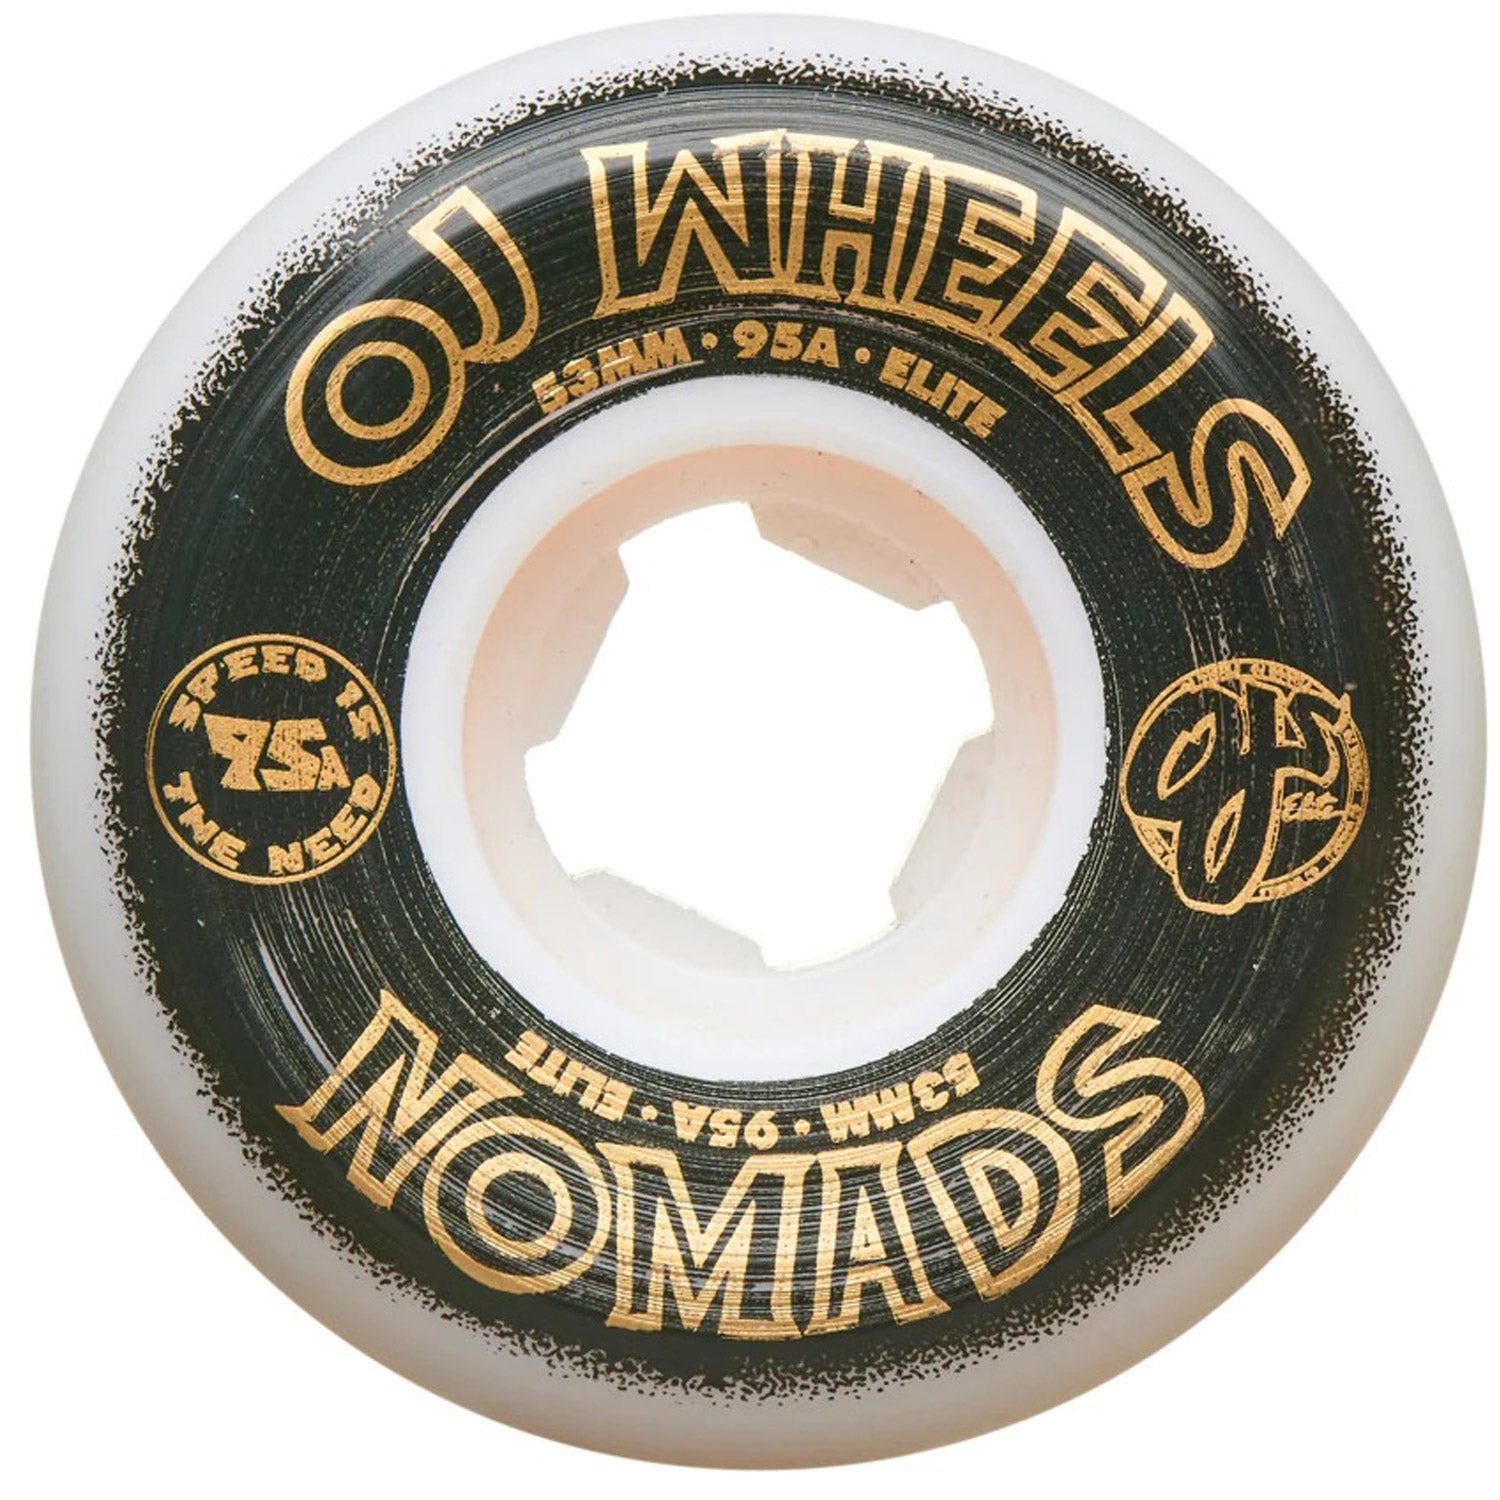 53mm Elite Nomads 95a Skateboard Wheels